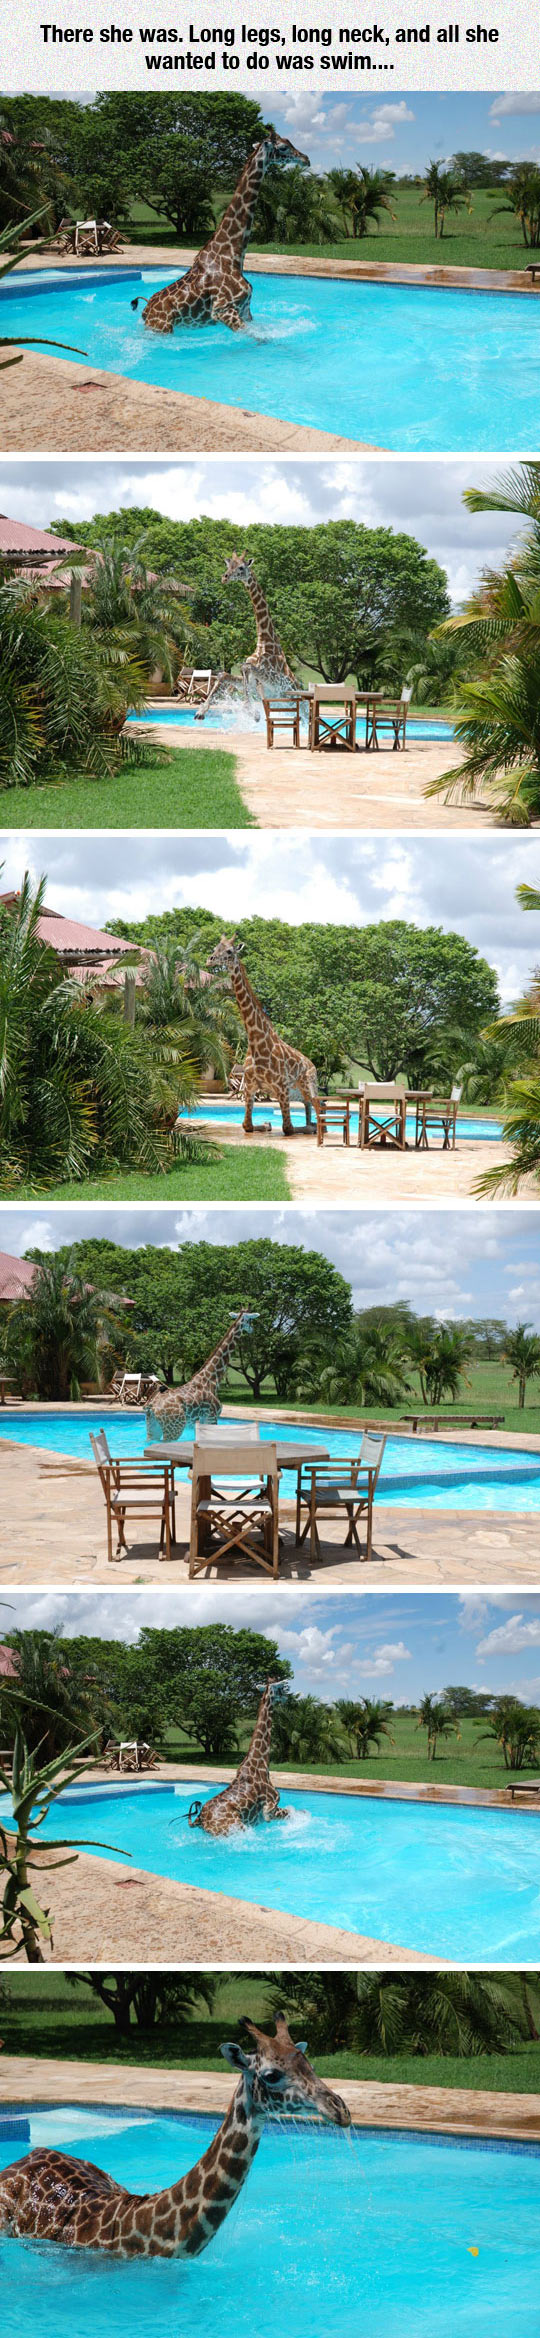 25533_cool-giraffe-swimming-water-pool.jpg